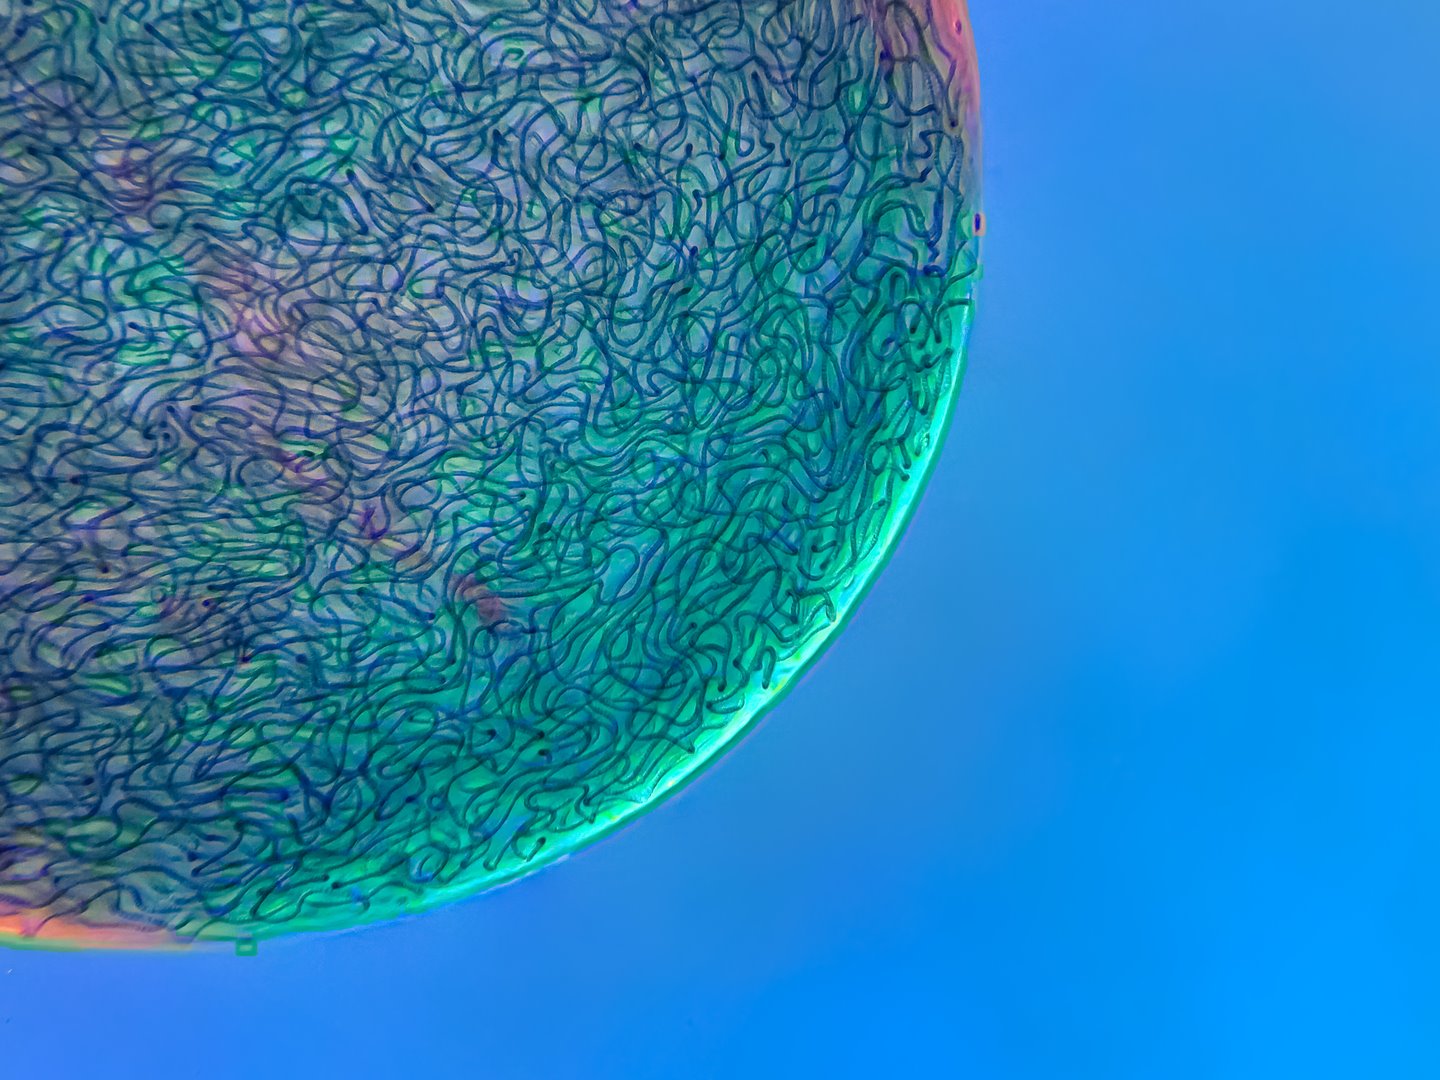 Hebras filamentosas de cianobacterias Nostoc capturadas dentro de una matriz gelatinosa